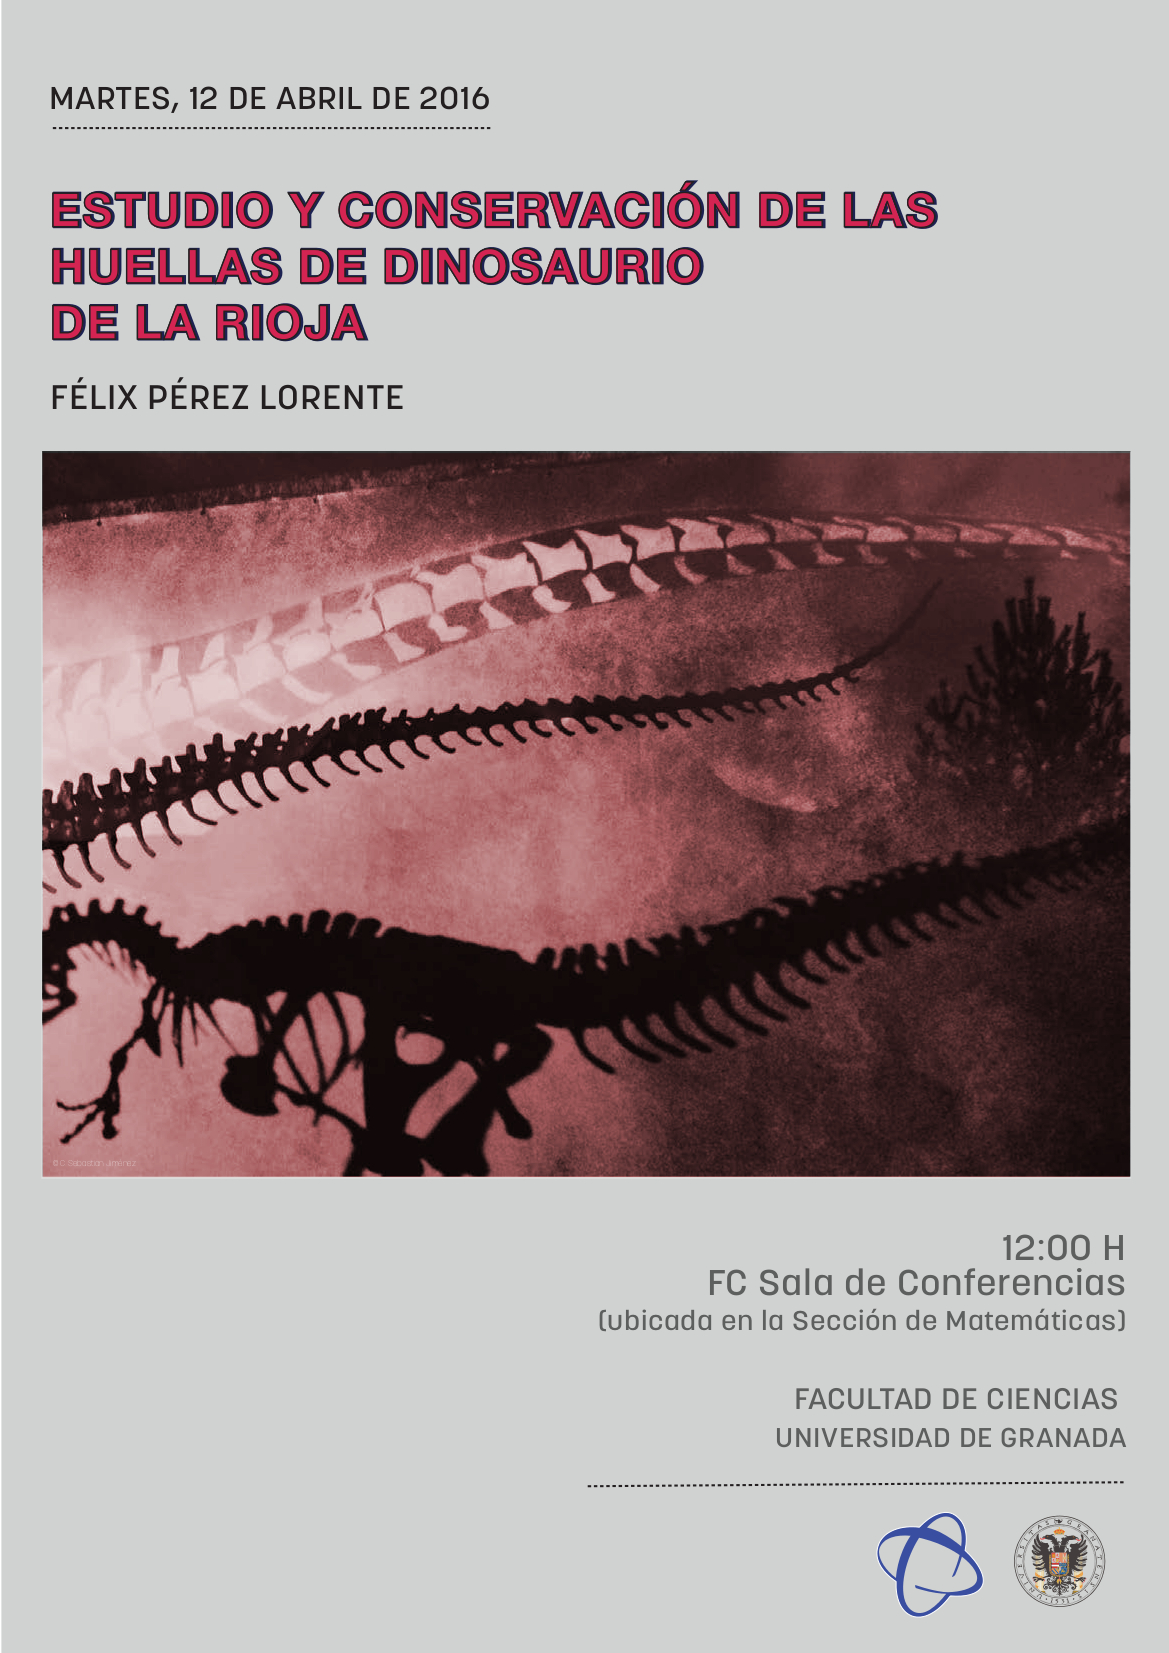 Estudio y conservación de las huellas de dinosaurio de La Rioja